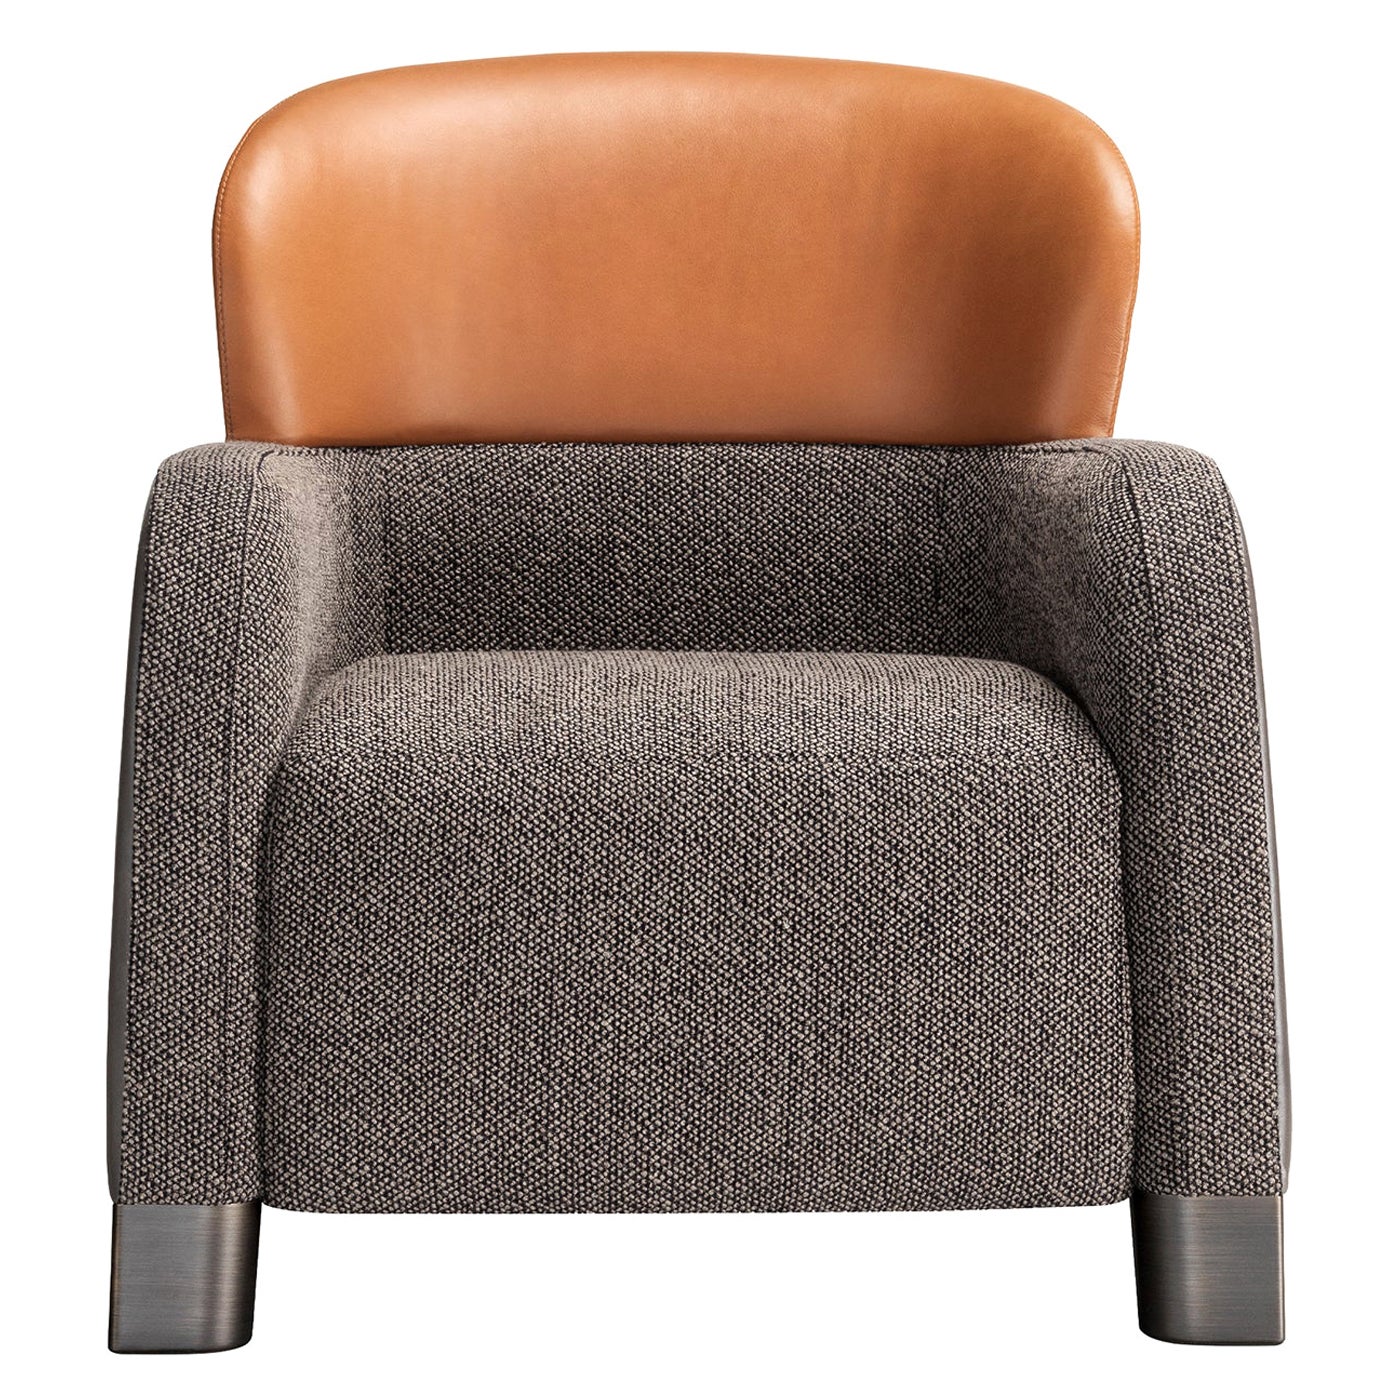 Eimer-Sessel in Braun/Grau mit niedriger Kopfstütze